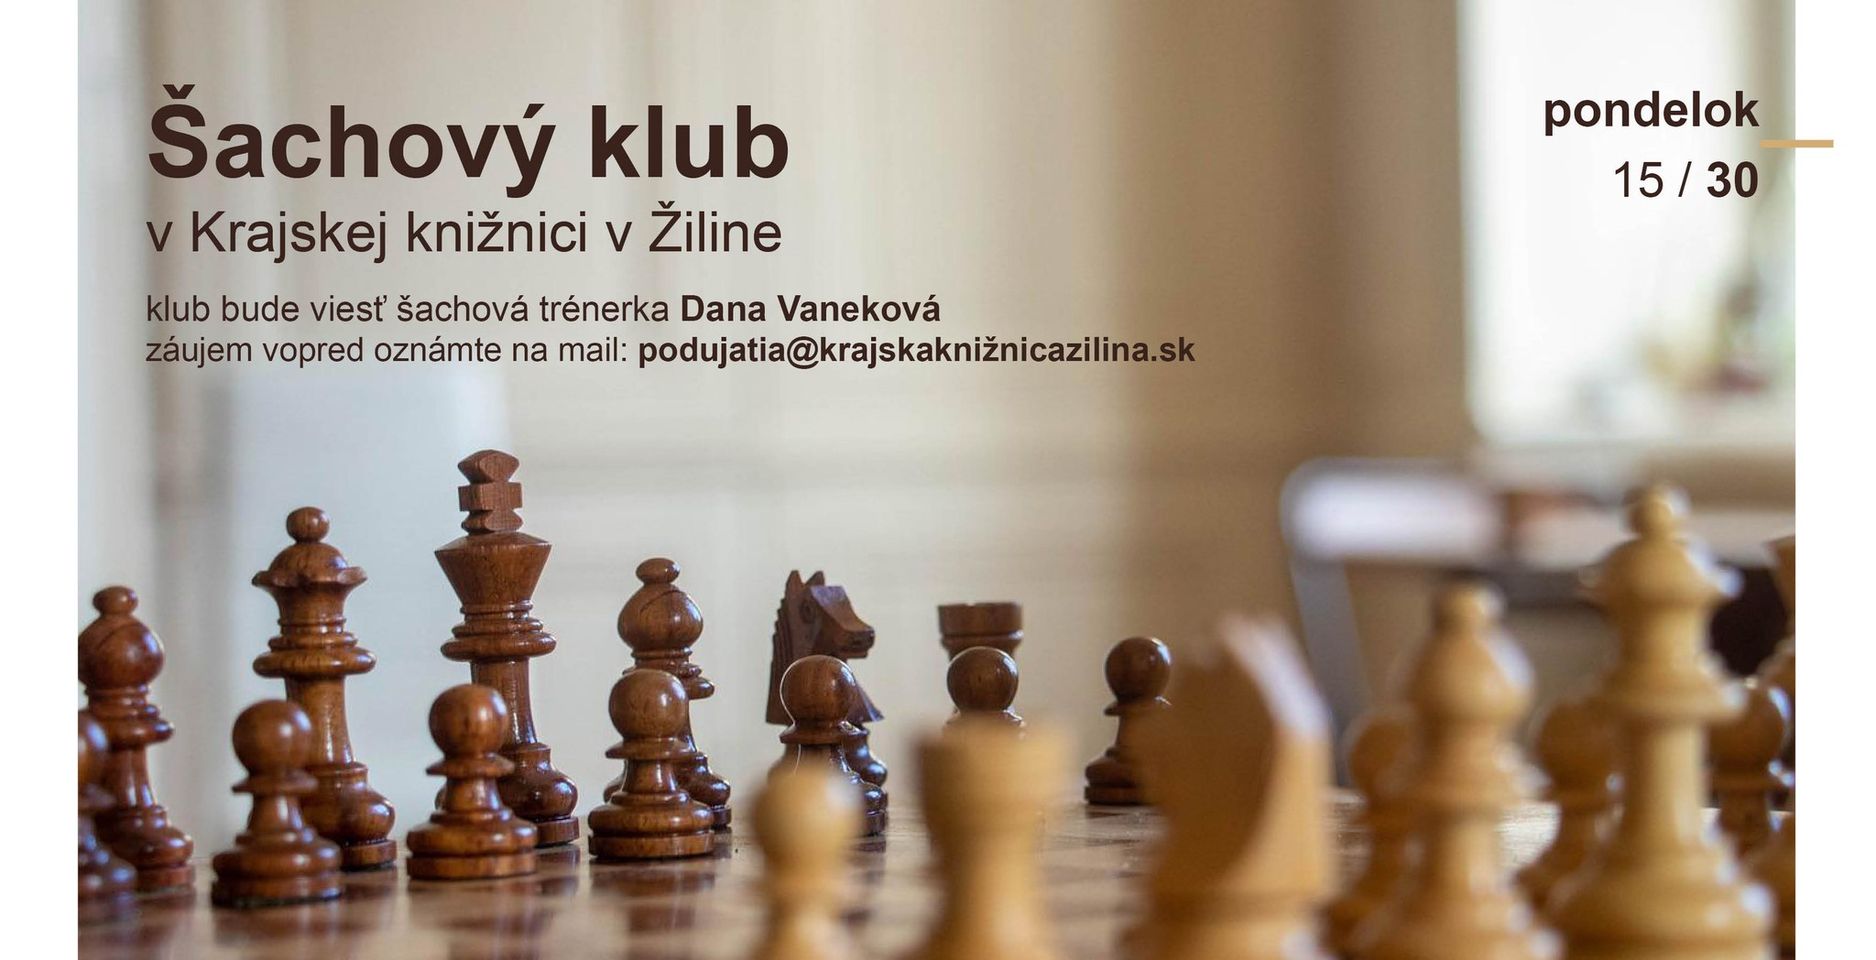 Šachový klub v KKZA Krajská knižnica